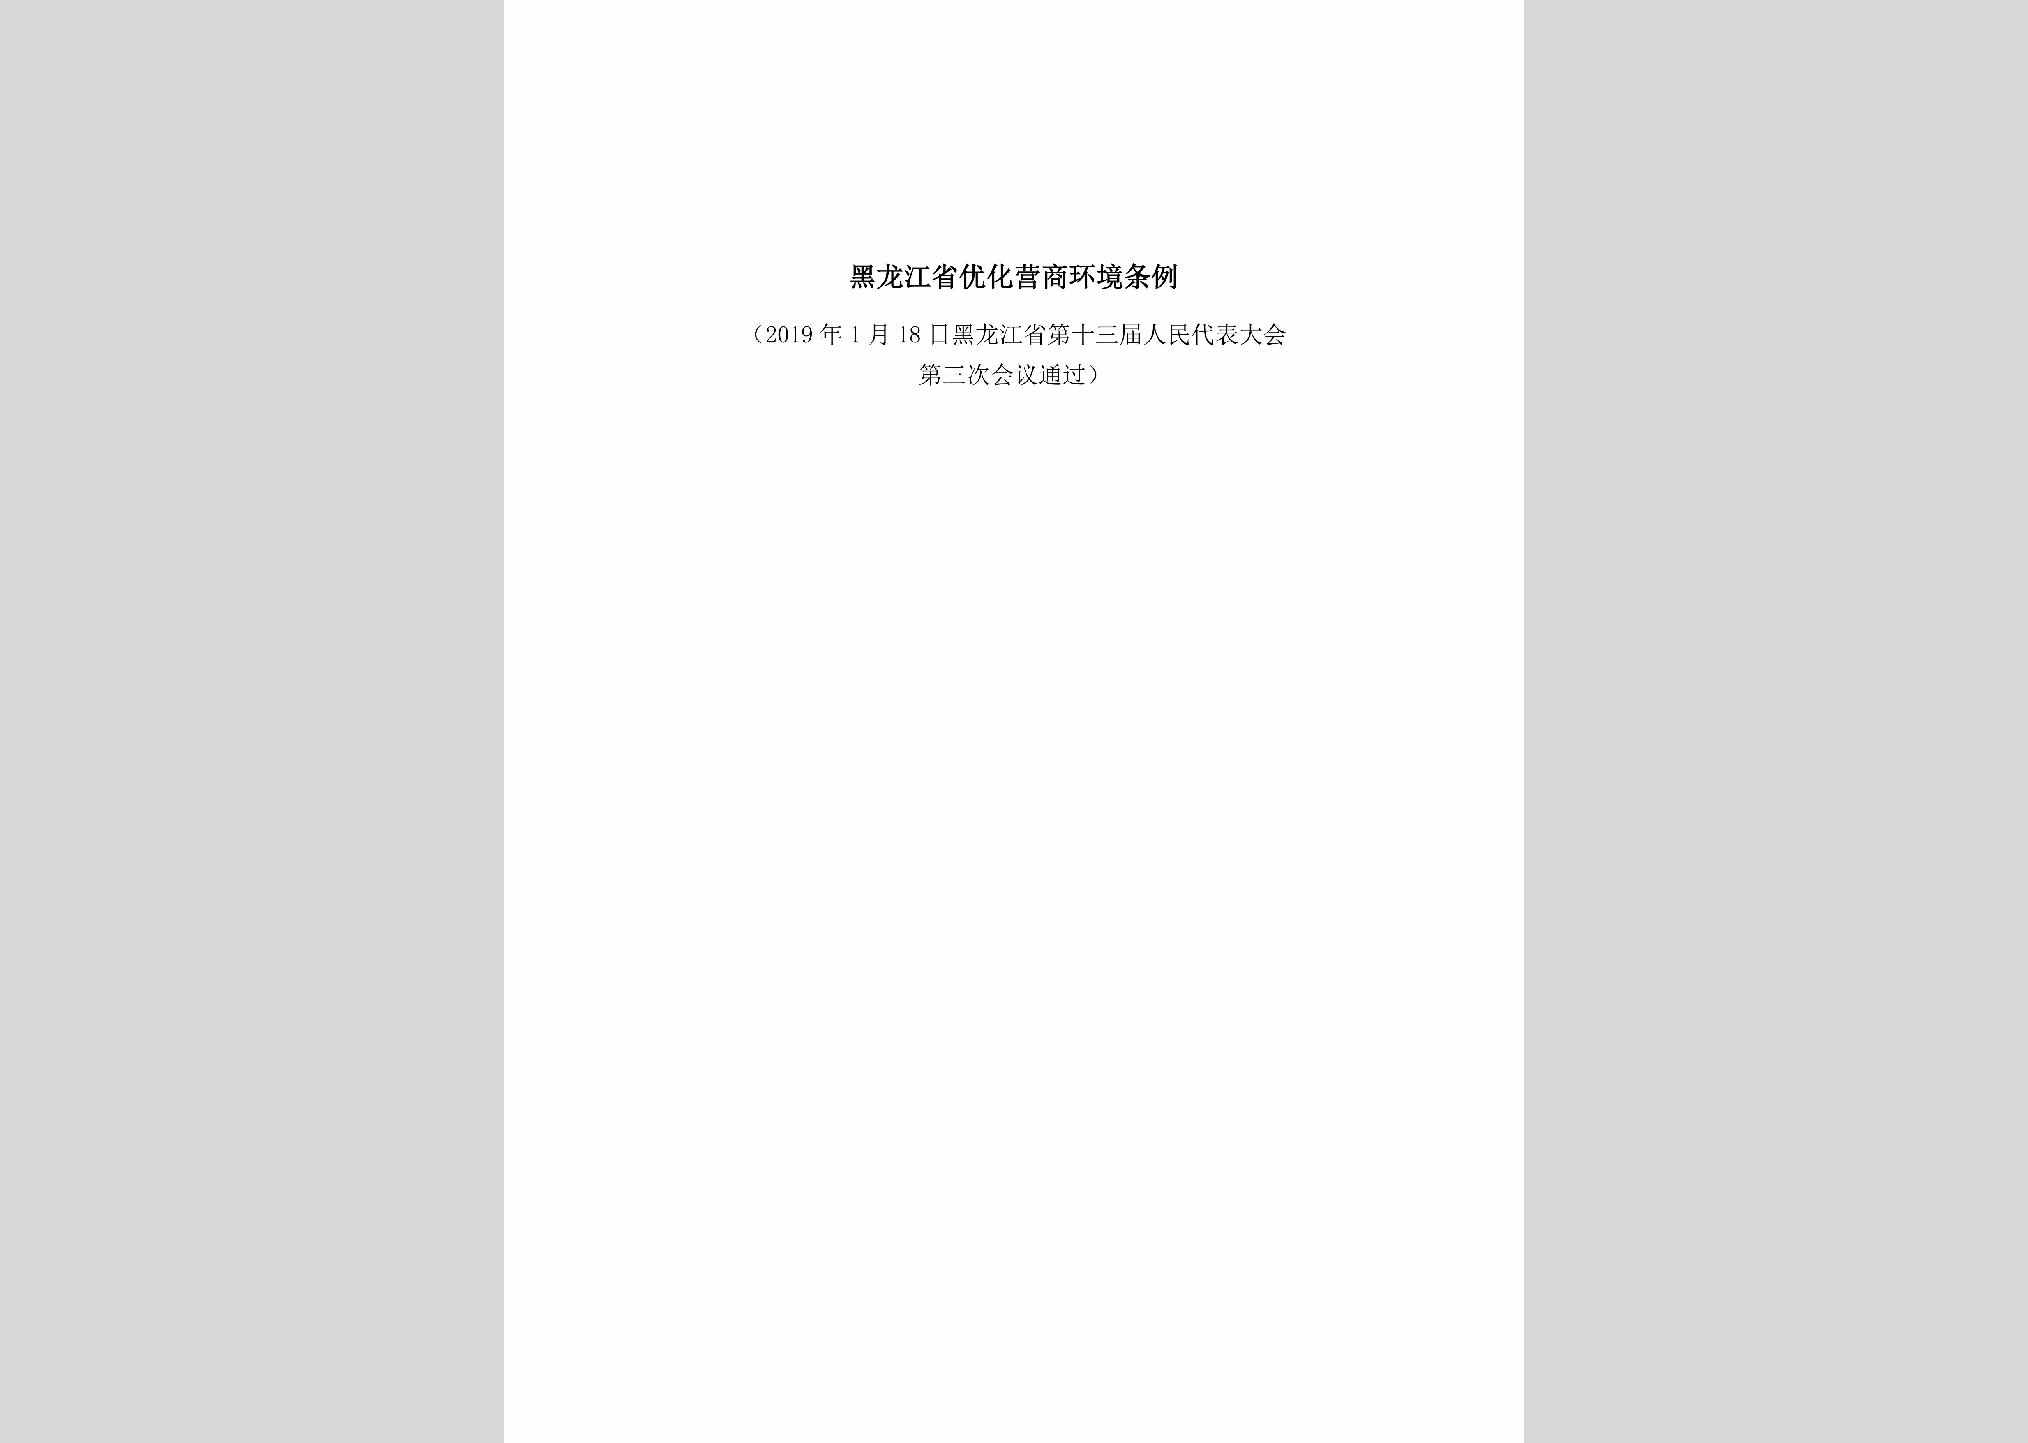 HLJ-YHYSHJTL-2019：黑龙江省优化营商环境条例